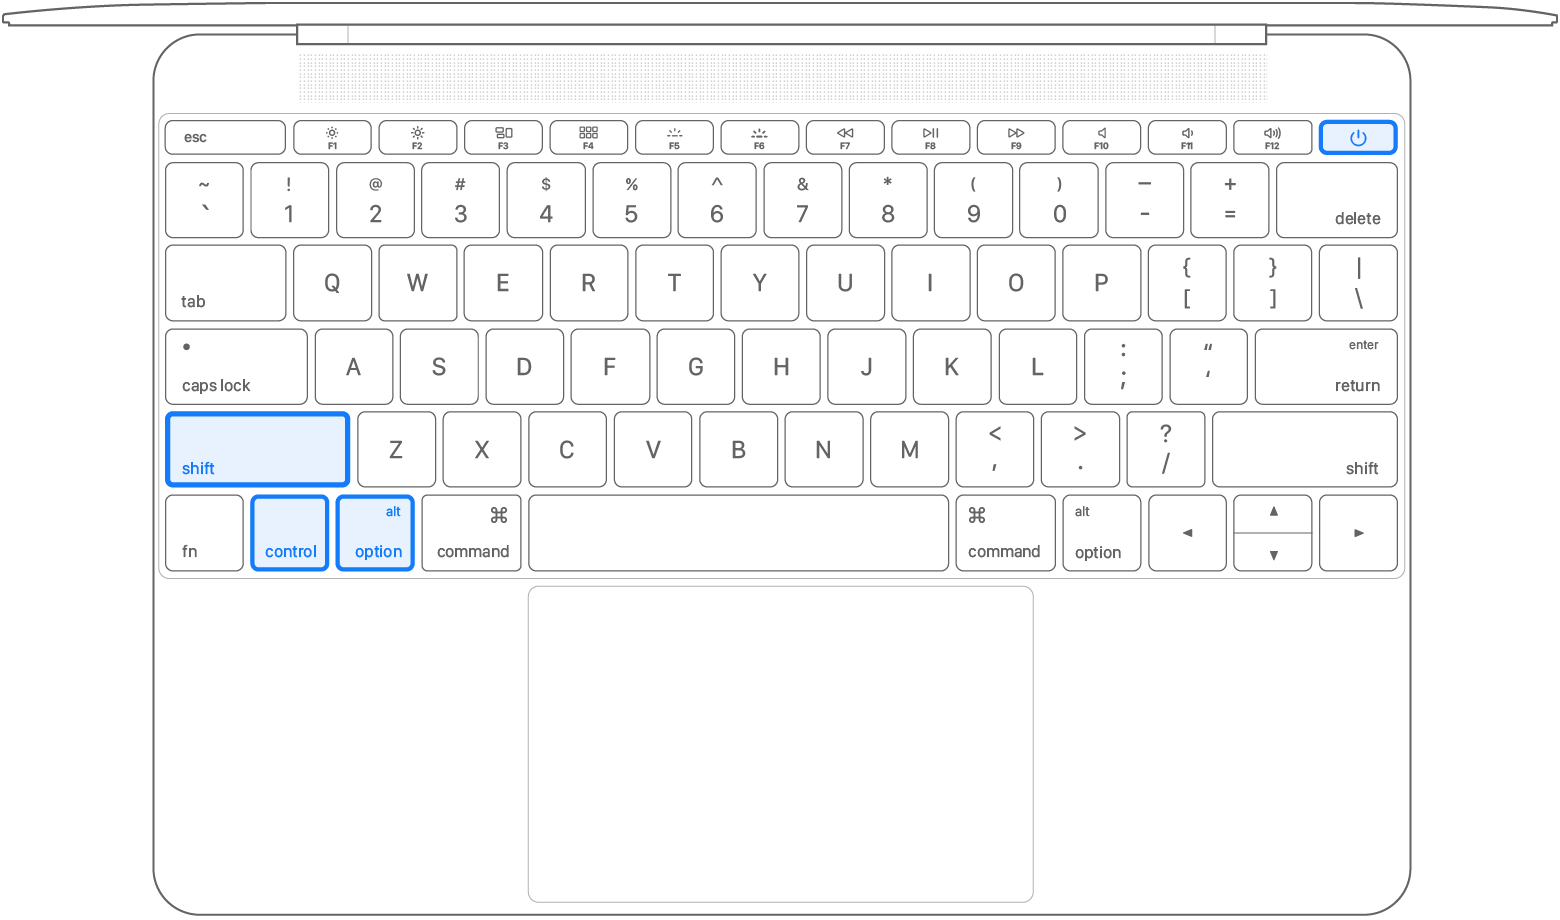 ../../_images/2016-macbook-keyboard-diagram-smc.png